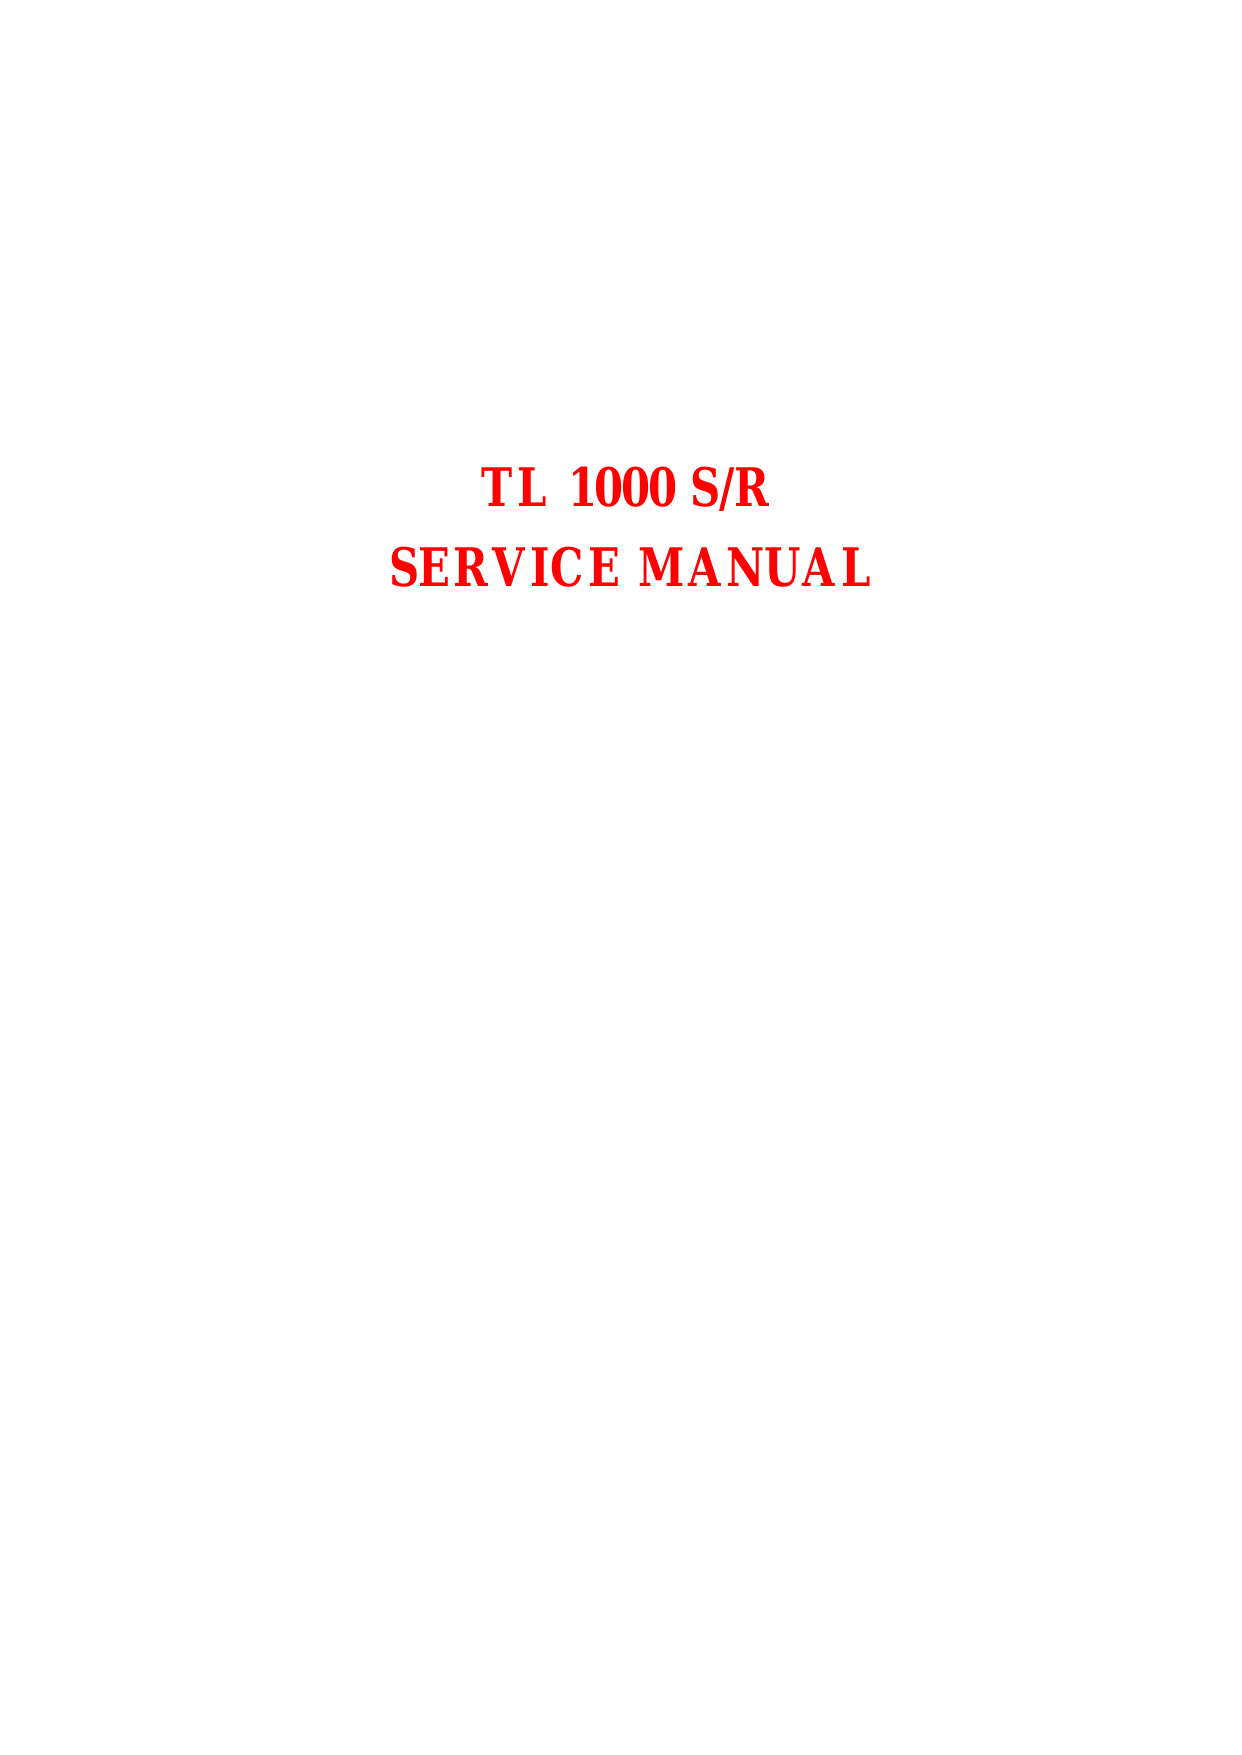 1997-2001 Suzuki TL 1000 S service manual Preview image 6